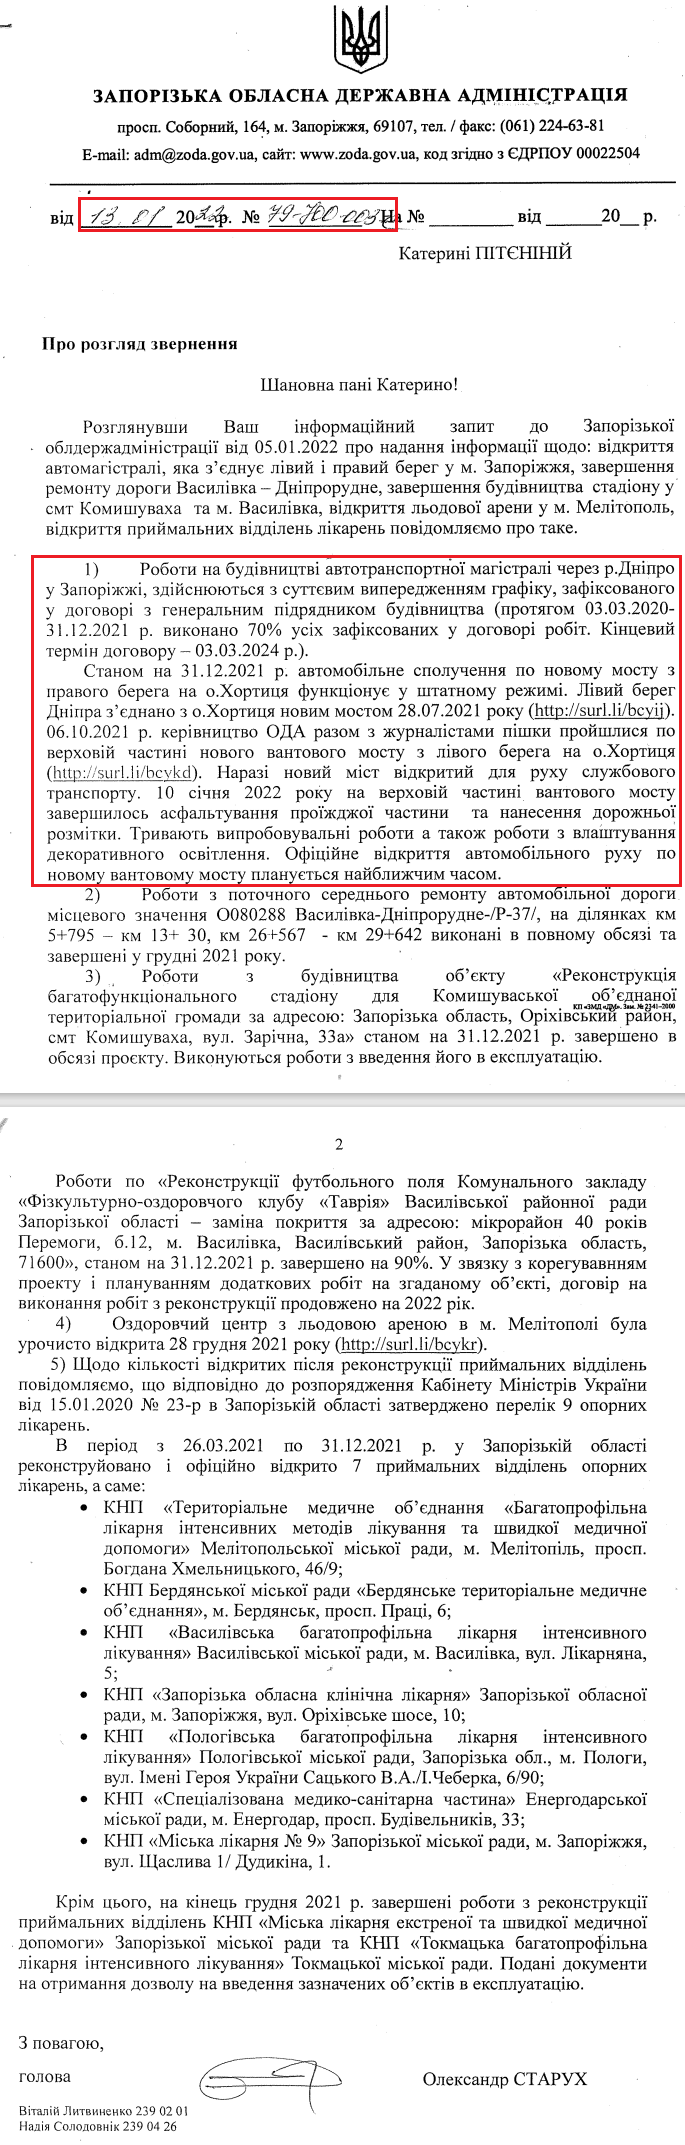 Лист від Запорізької обласної державної адміністрації від 13 січня 2022 р.